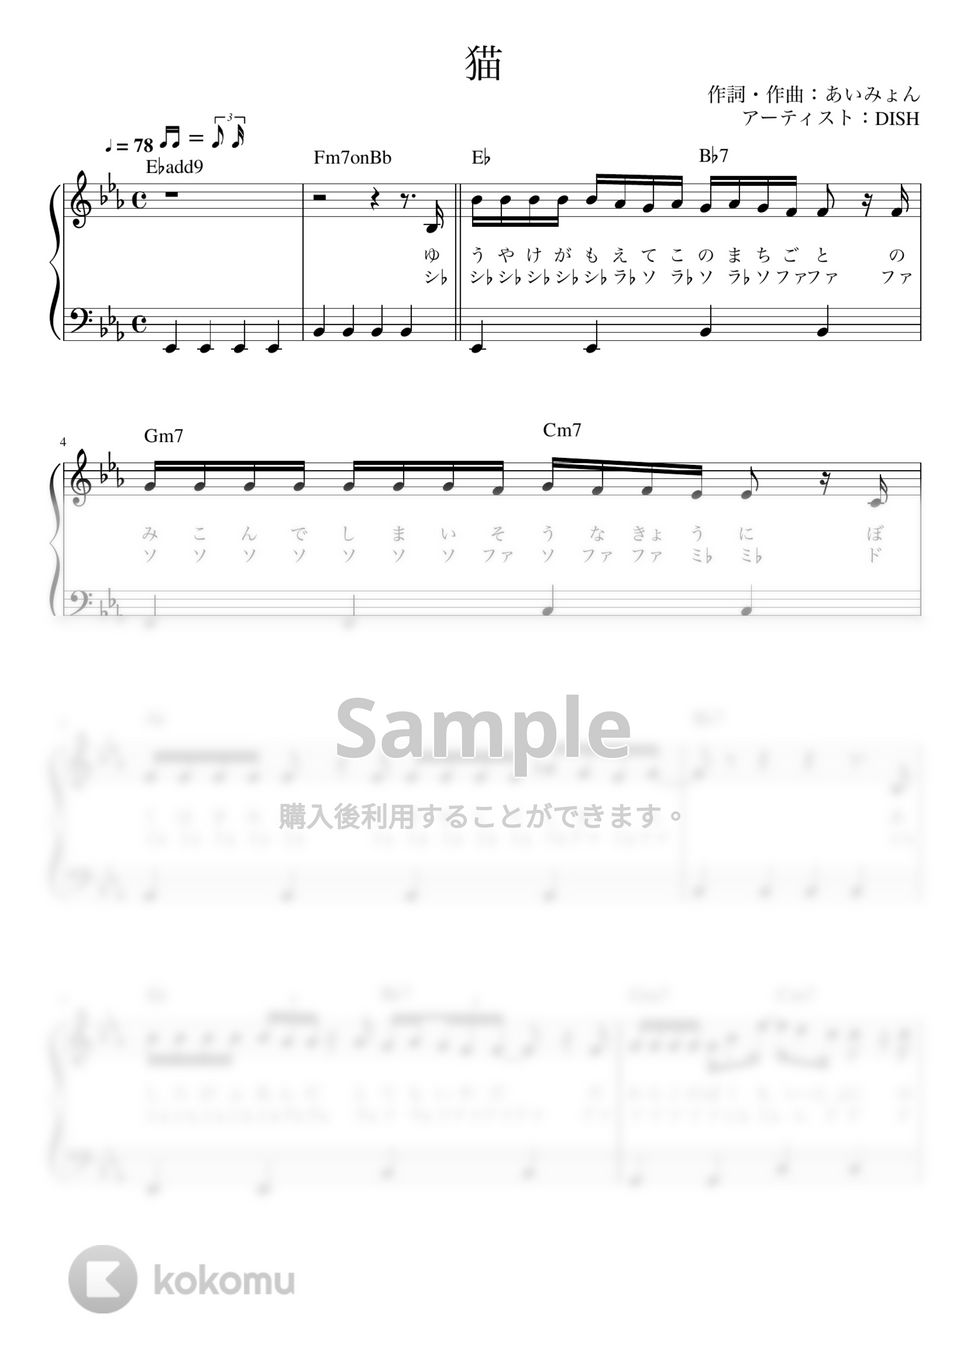 DISH// - 猫 (ピアノ かんたん 歌詞付き ドレミ付き 初心者) by piano.tokyo